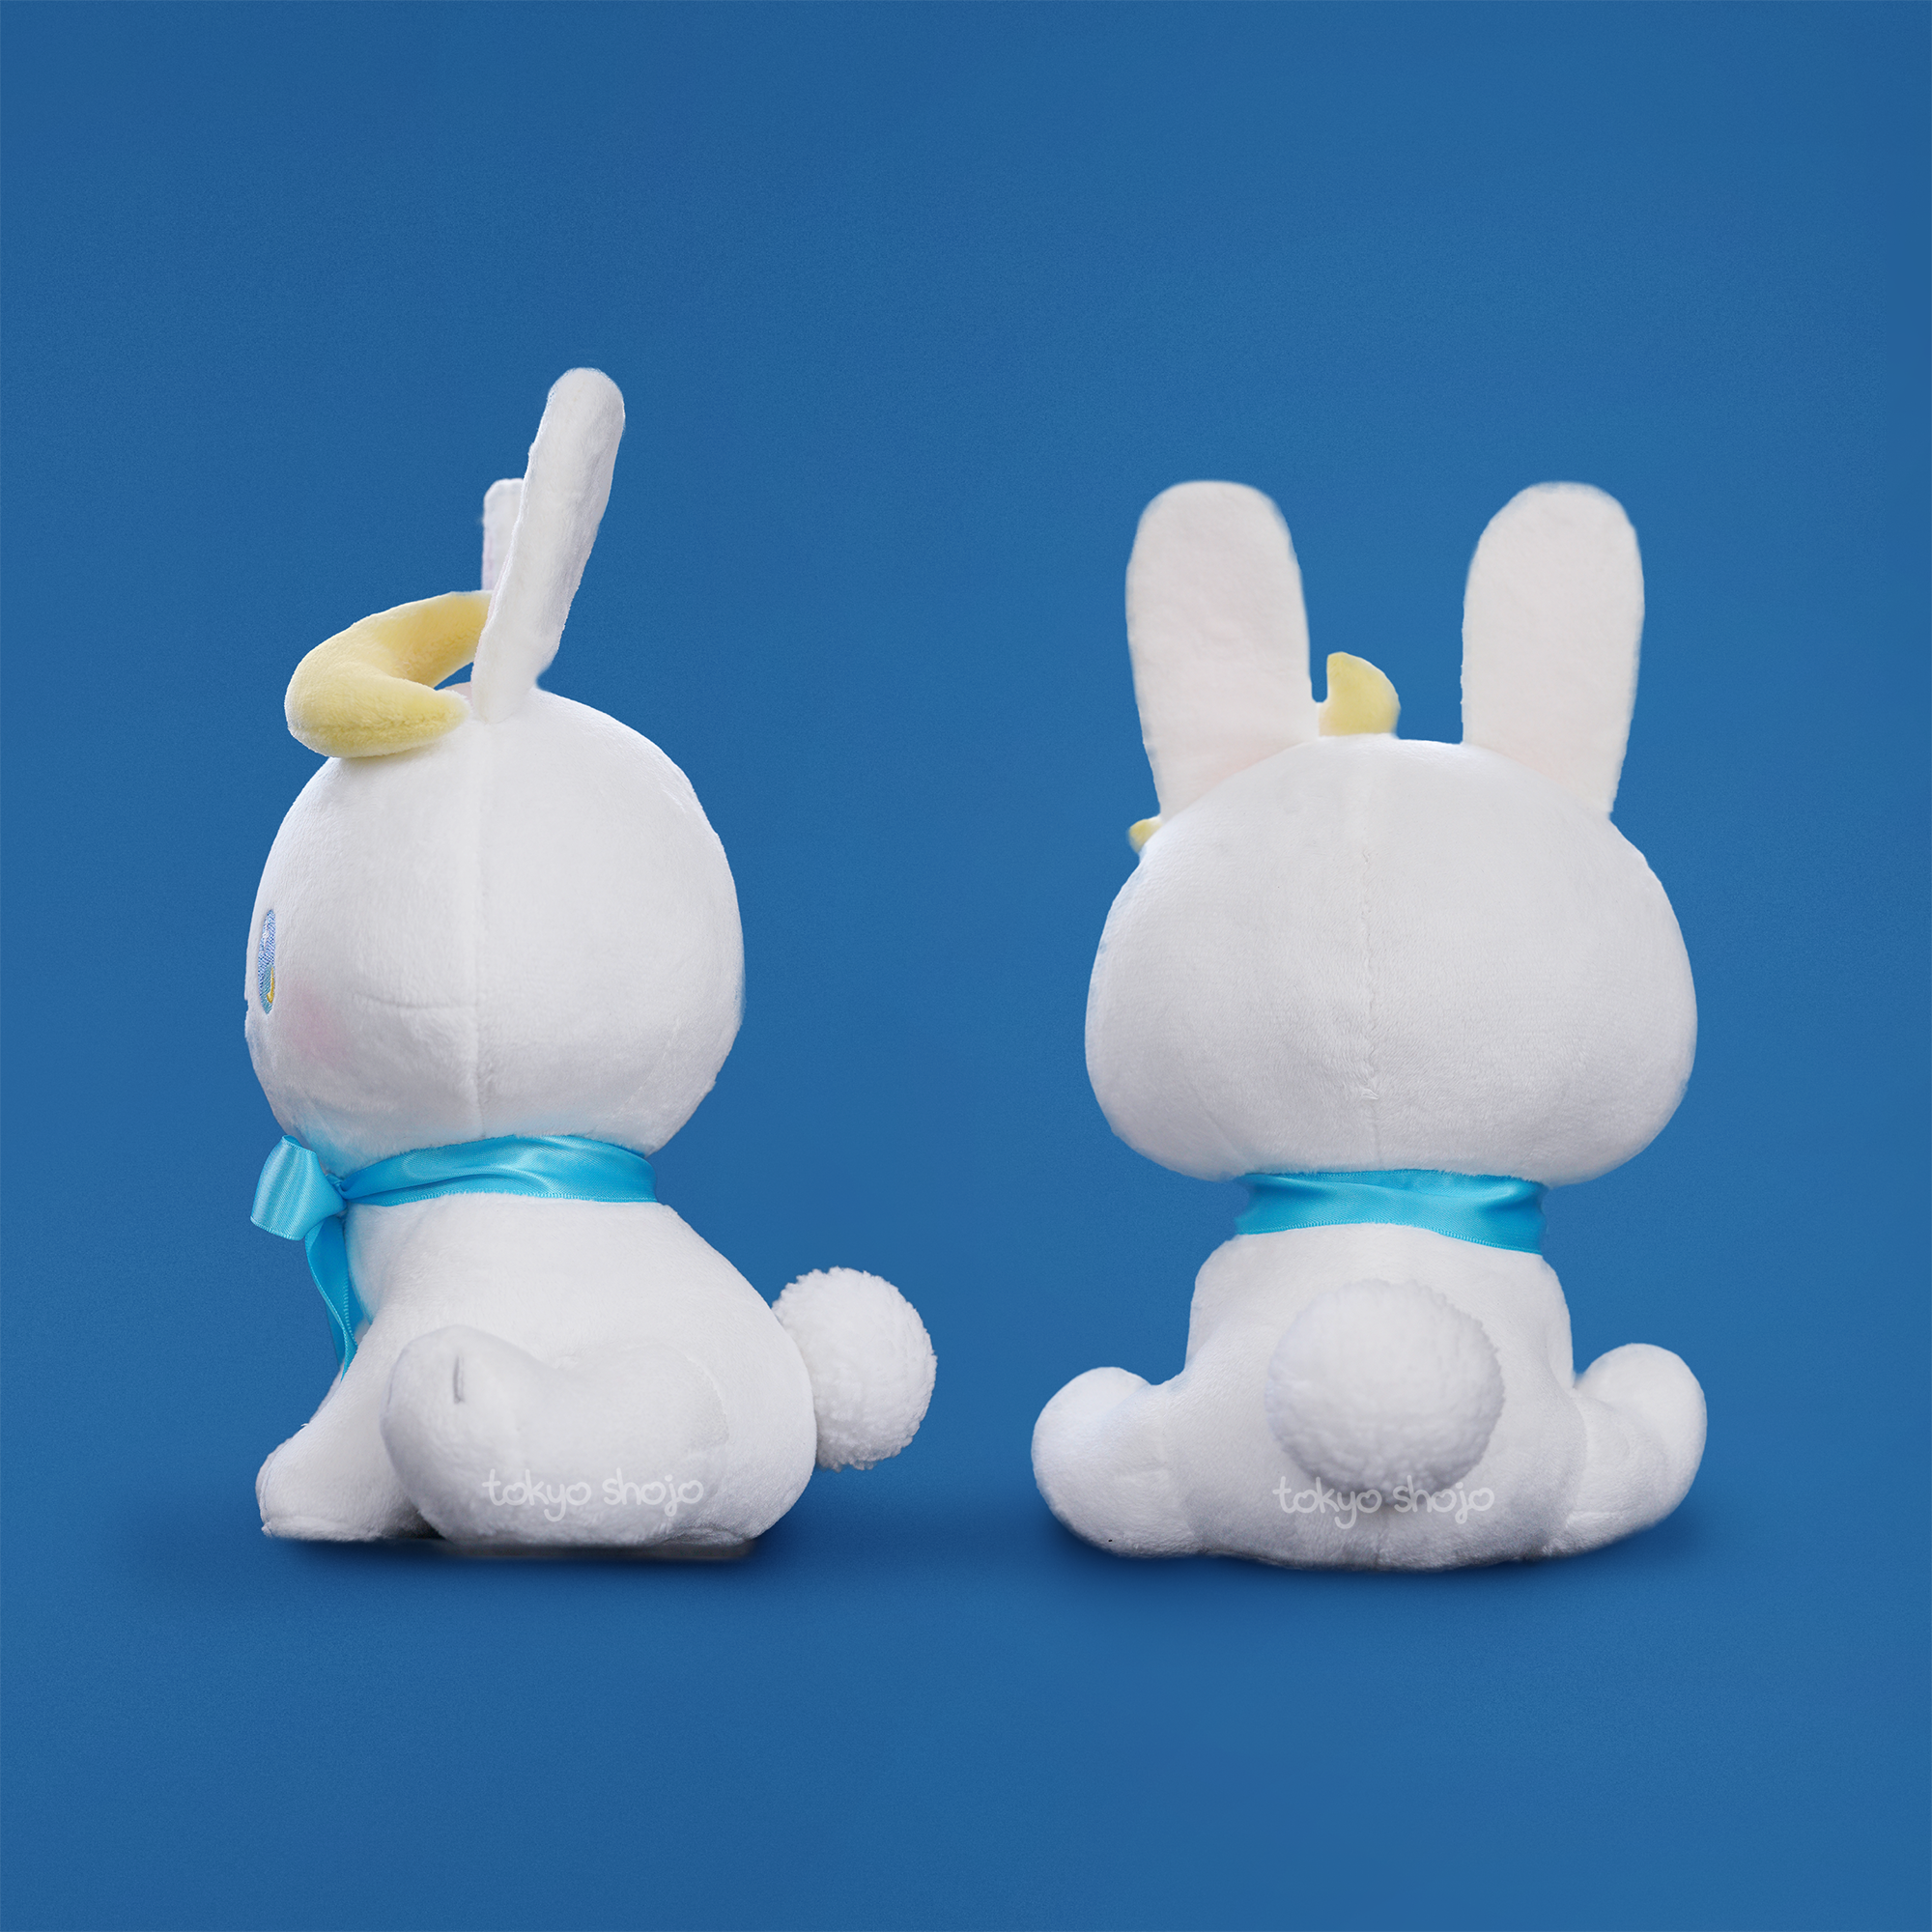 Tsuki the Bunny Plushie